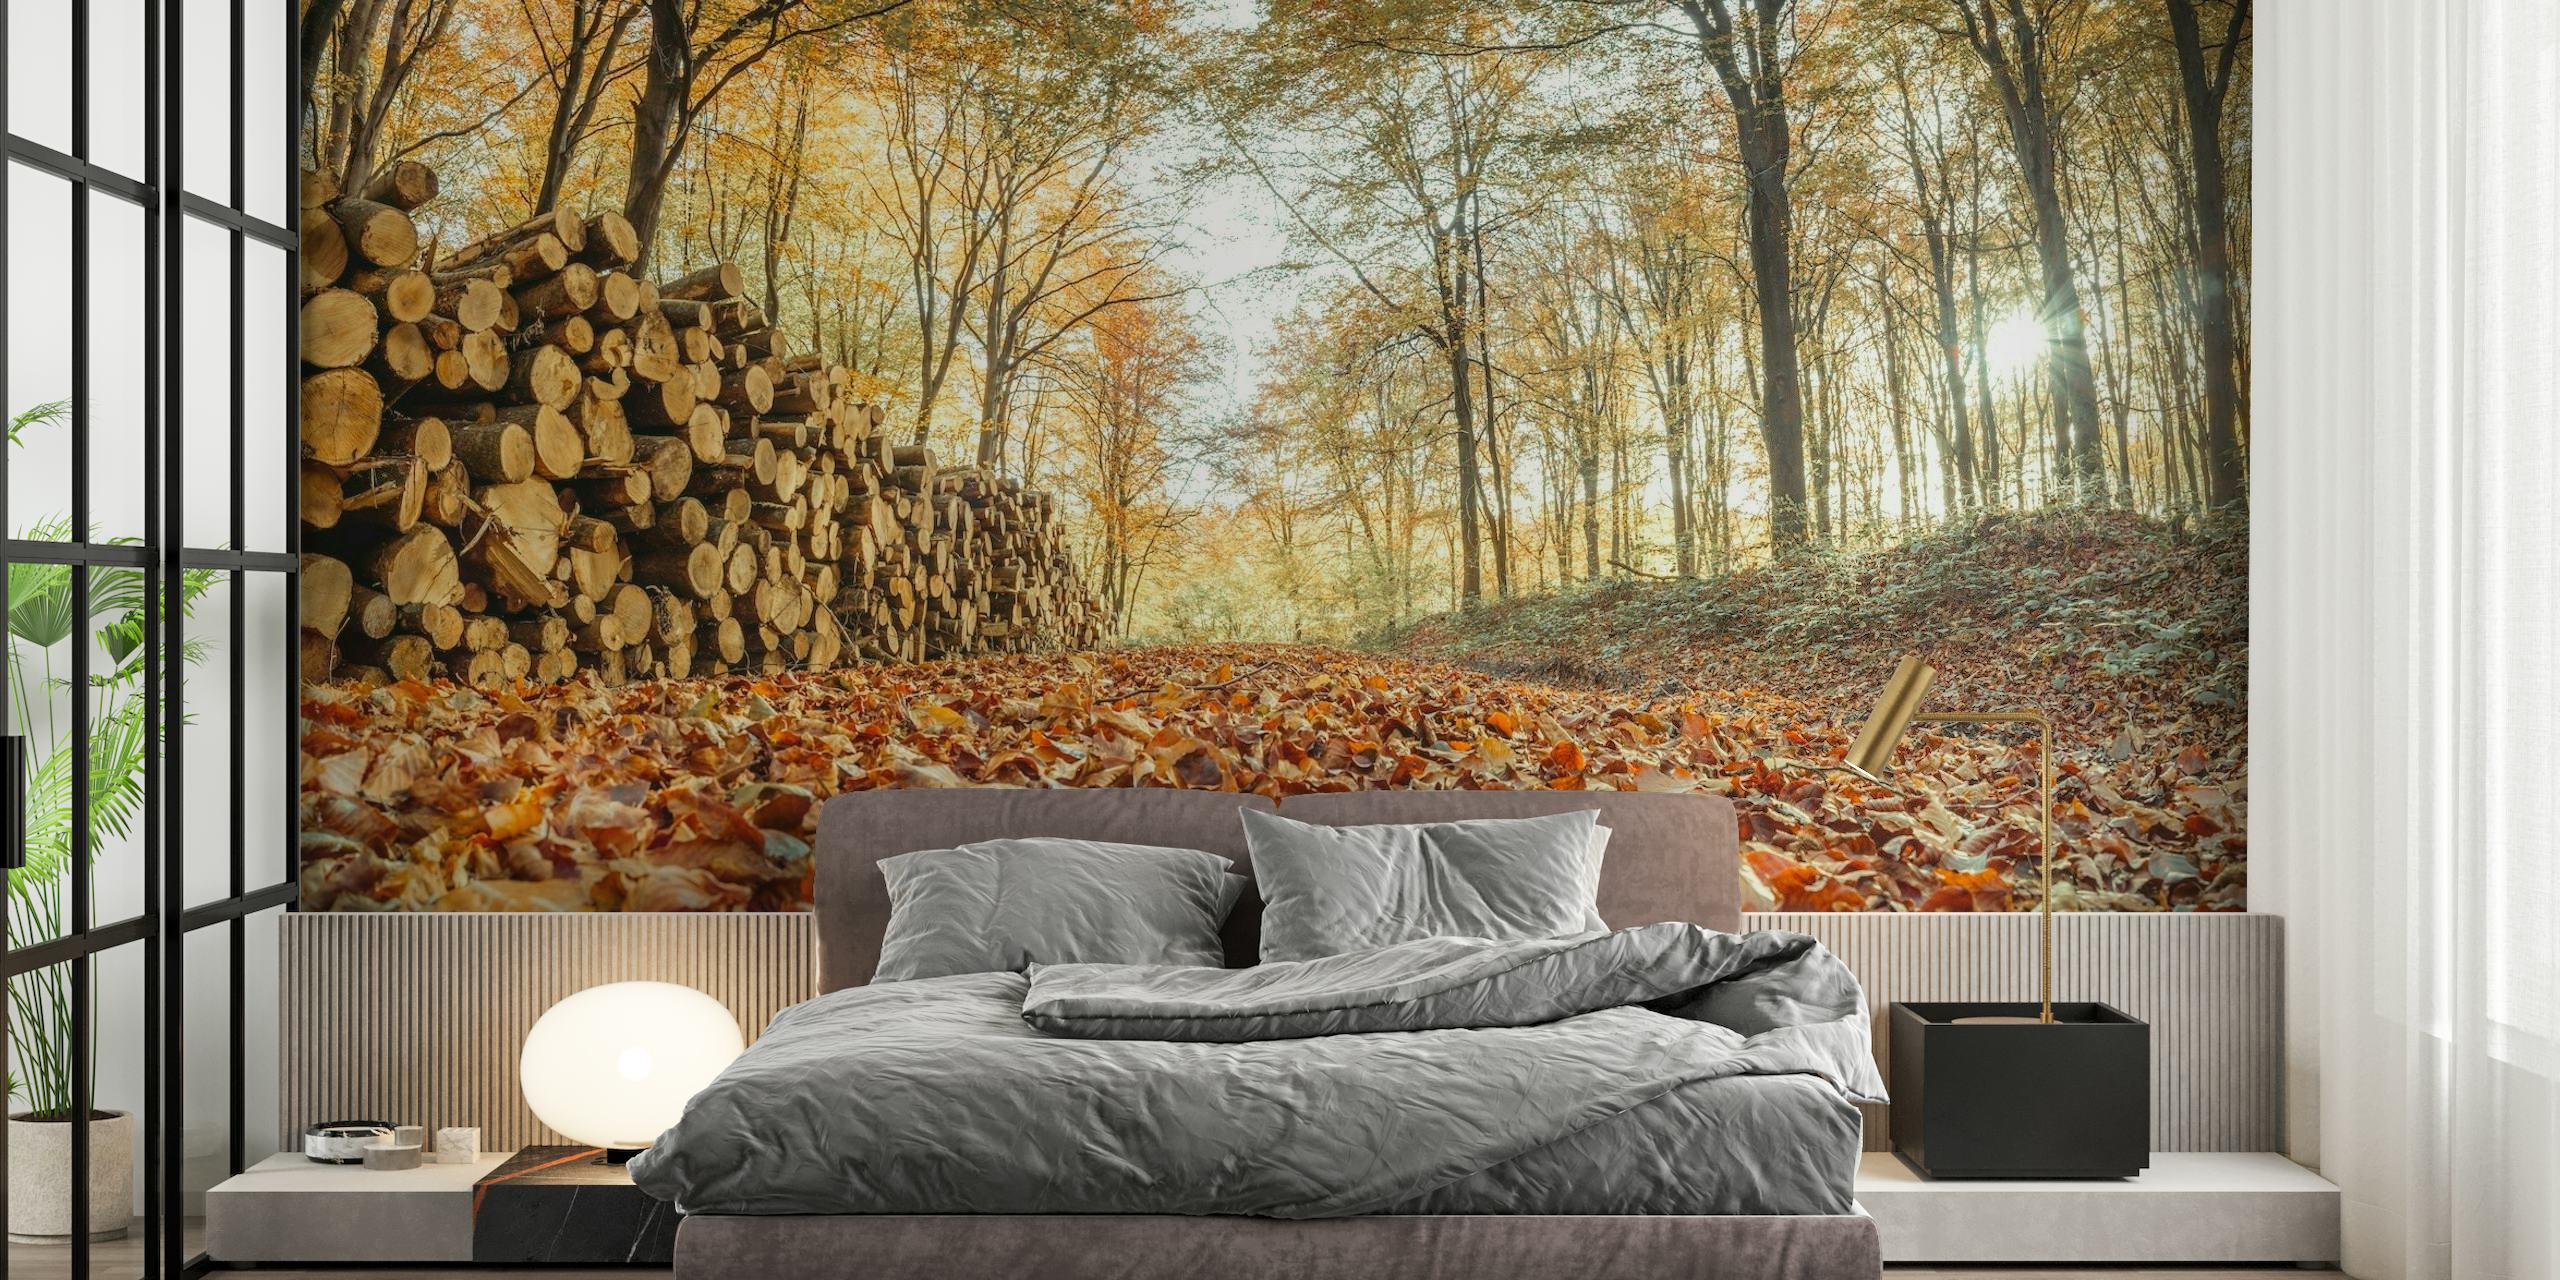 En hyggelig efterårsskovscene med en bunke træstammer og et tæppe af nedfaldne blade